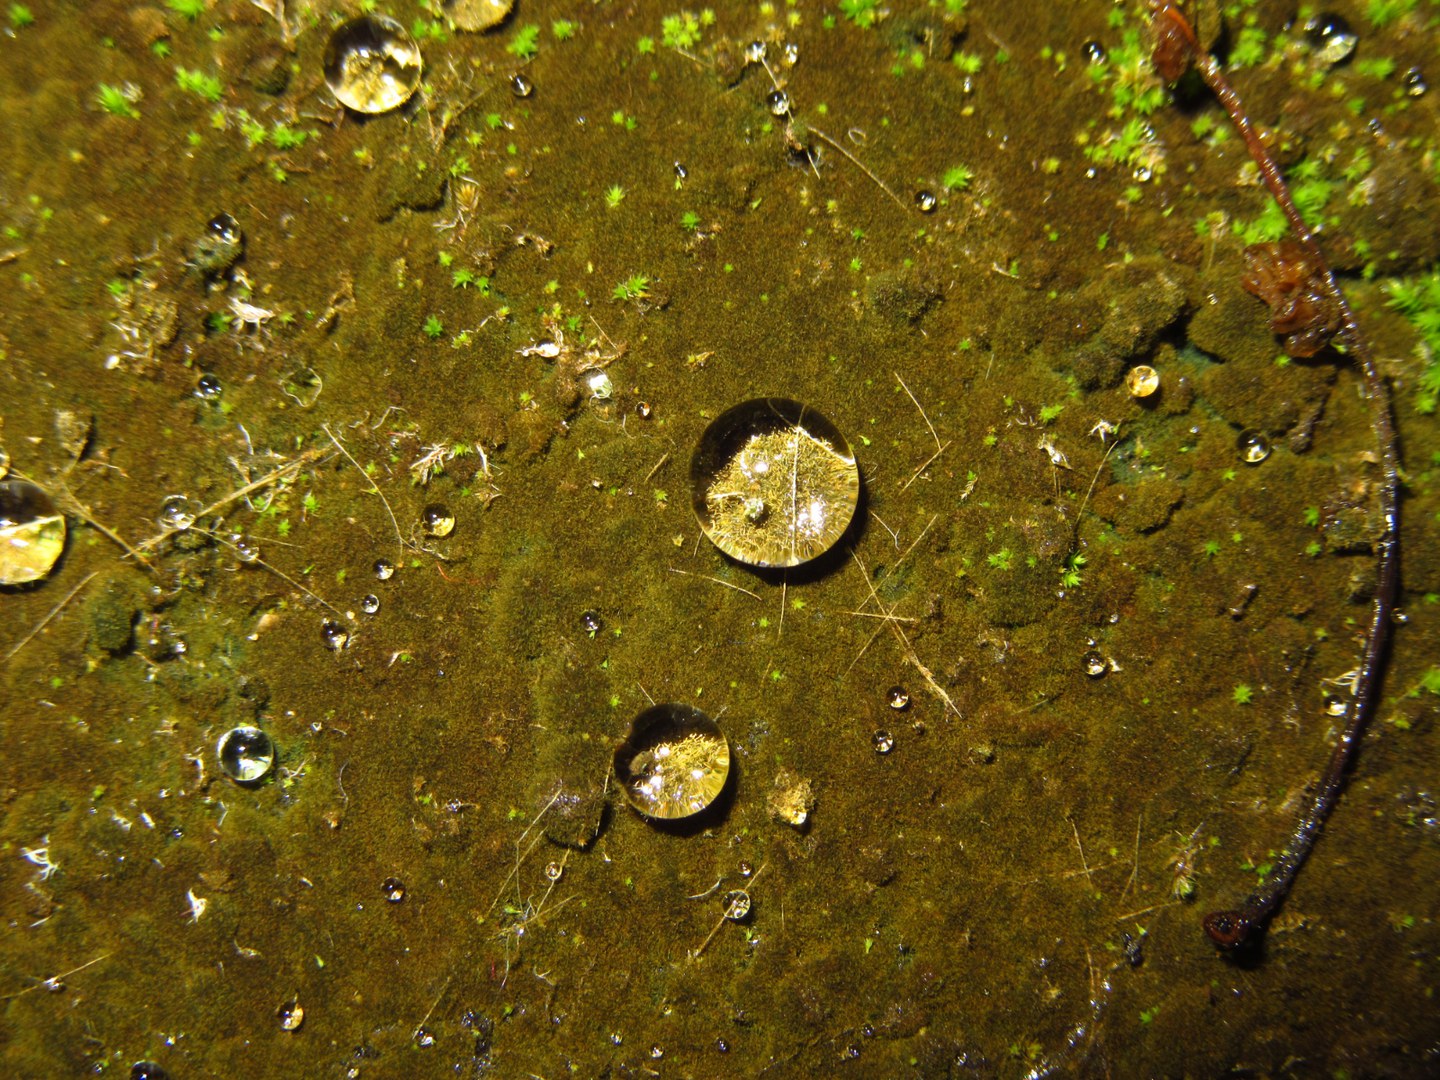 This water-repellent cyanobacterial film (Hassallia)